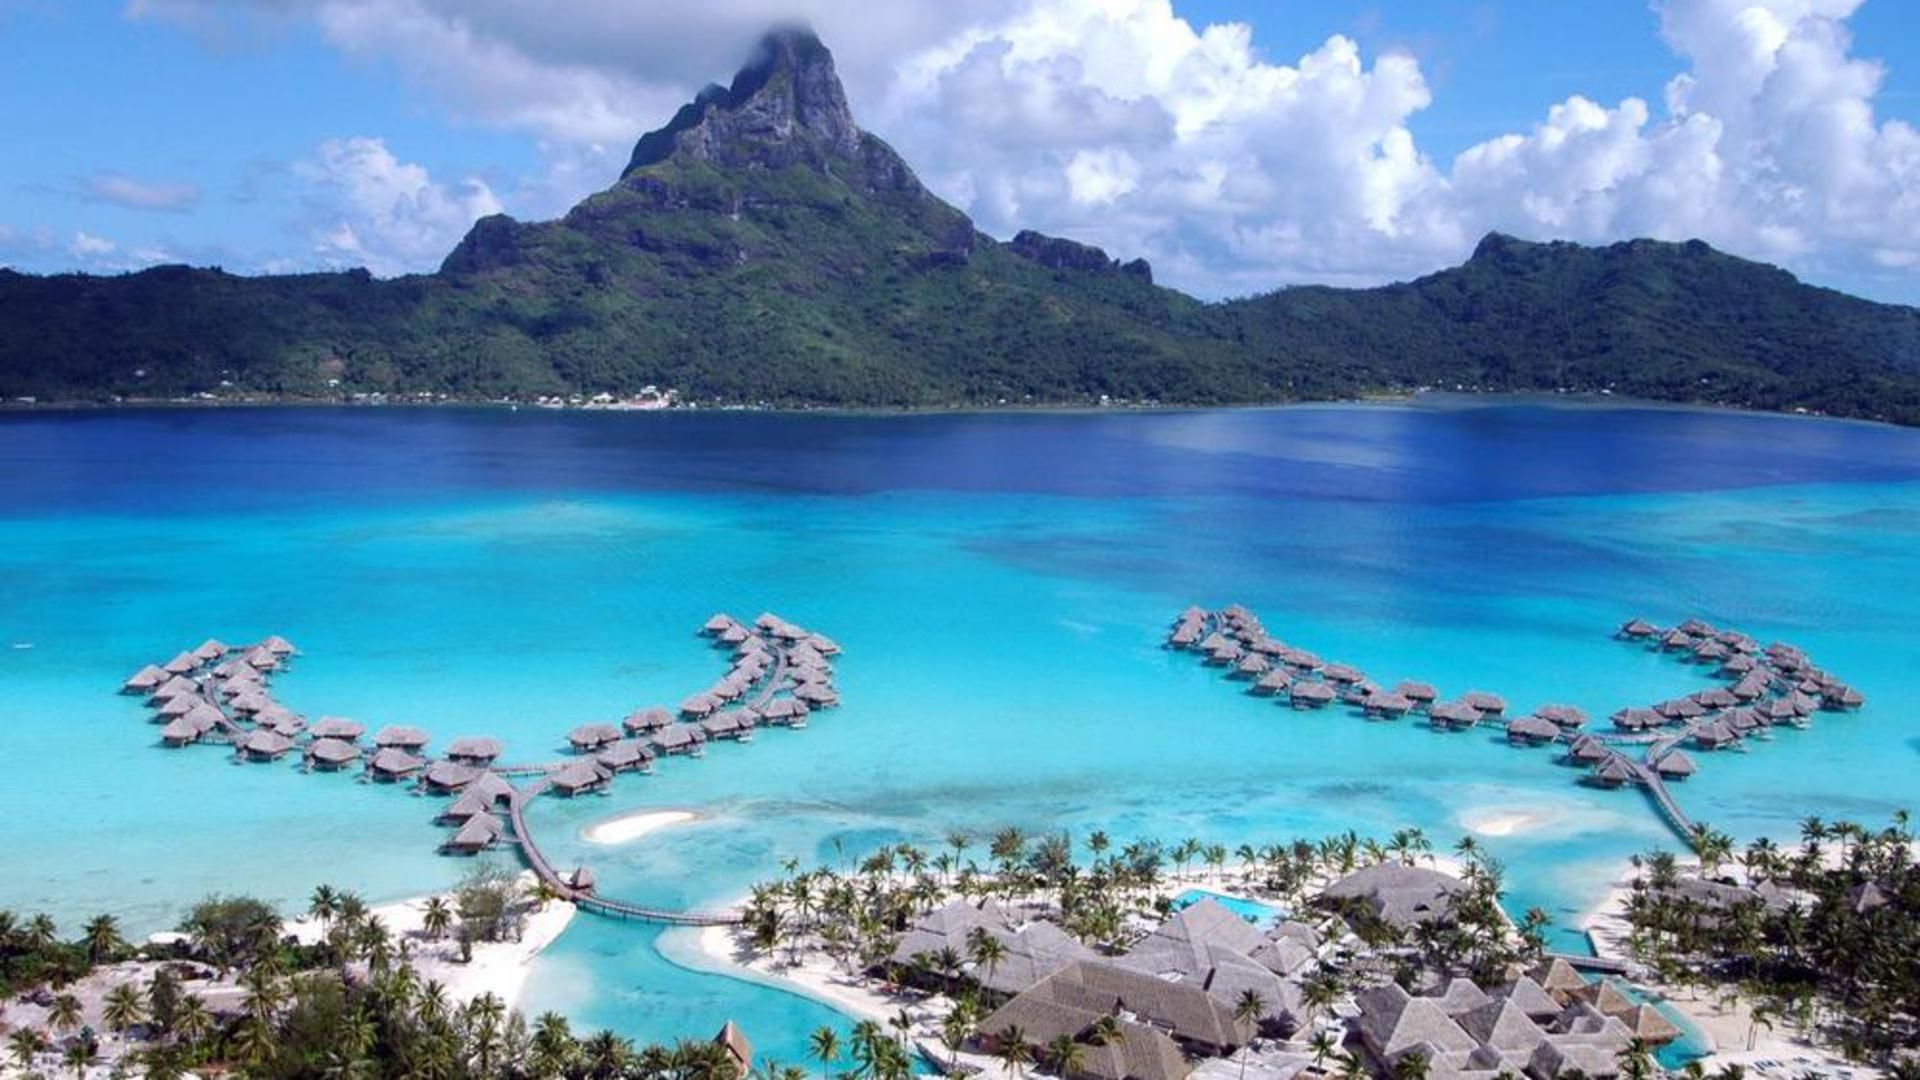 Fonds d'écran Tahiti : tous les wallpapers Tahiti